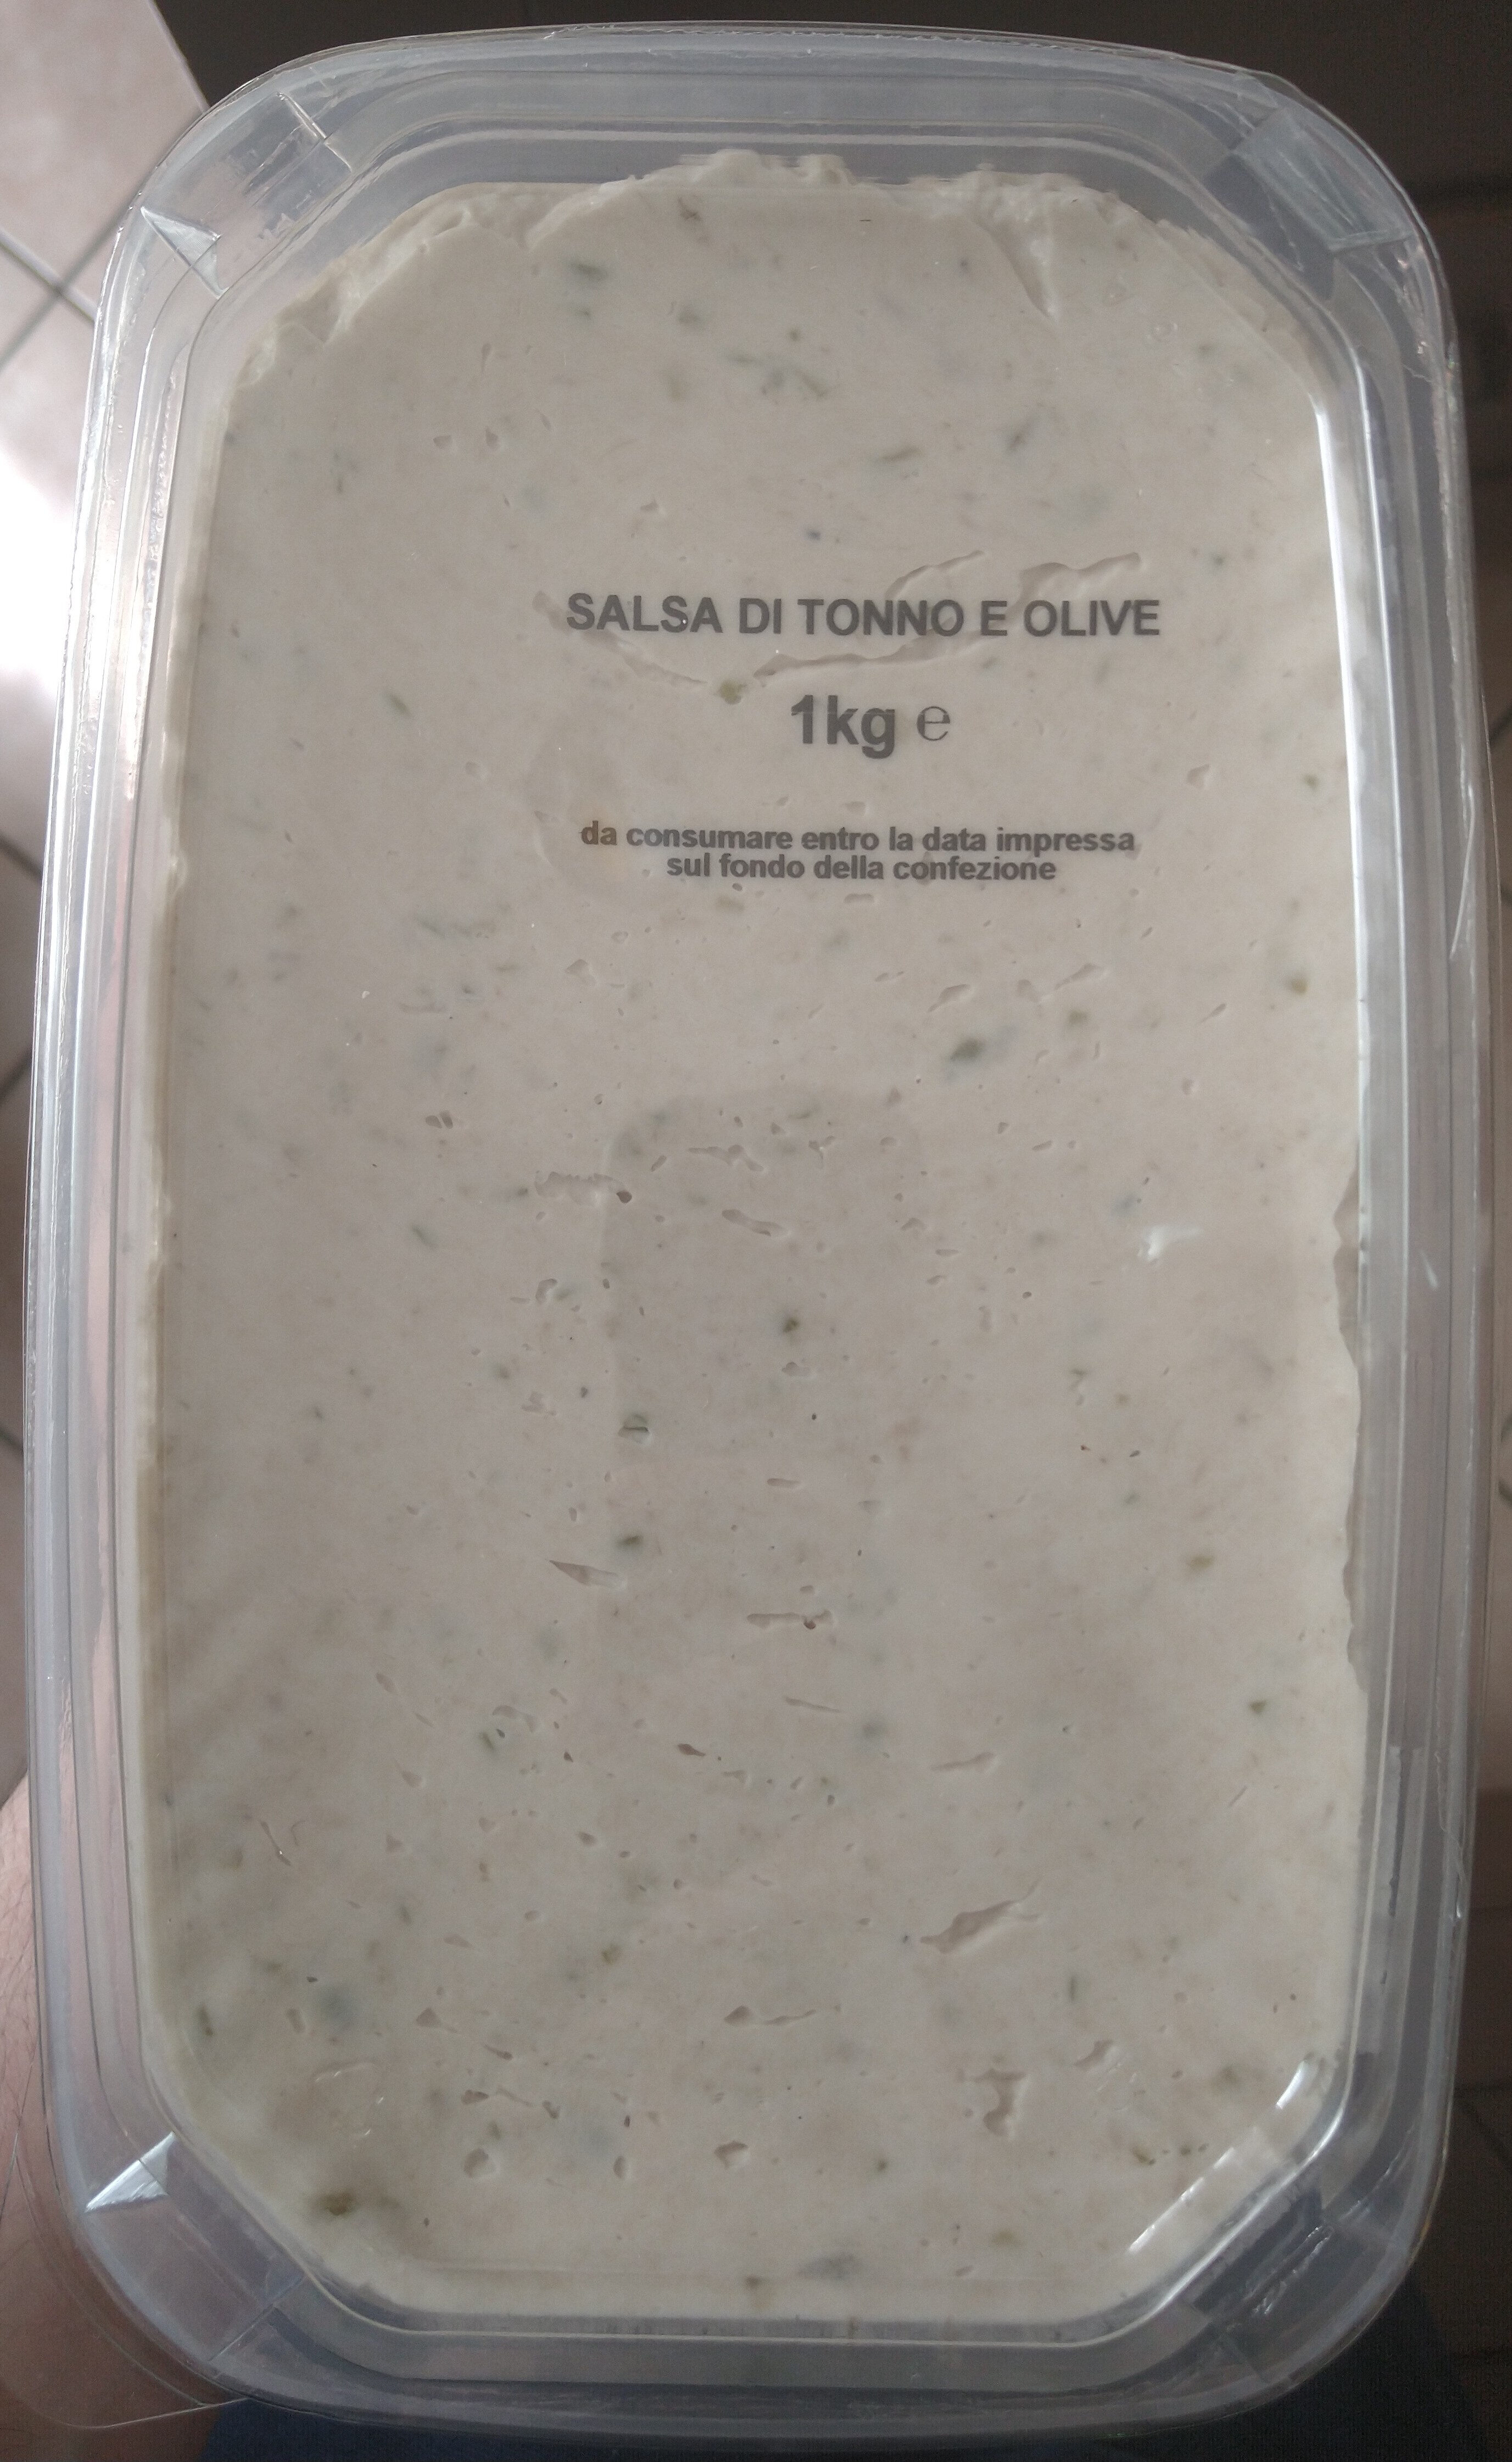 salsa di tonno e olive - Product - it